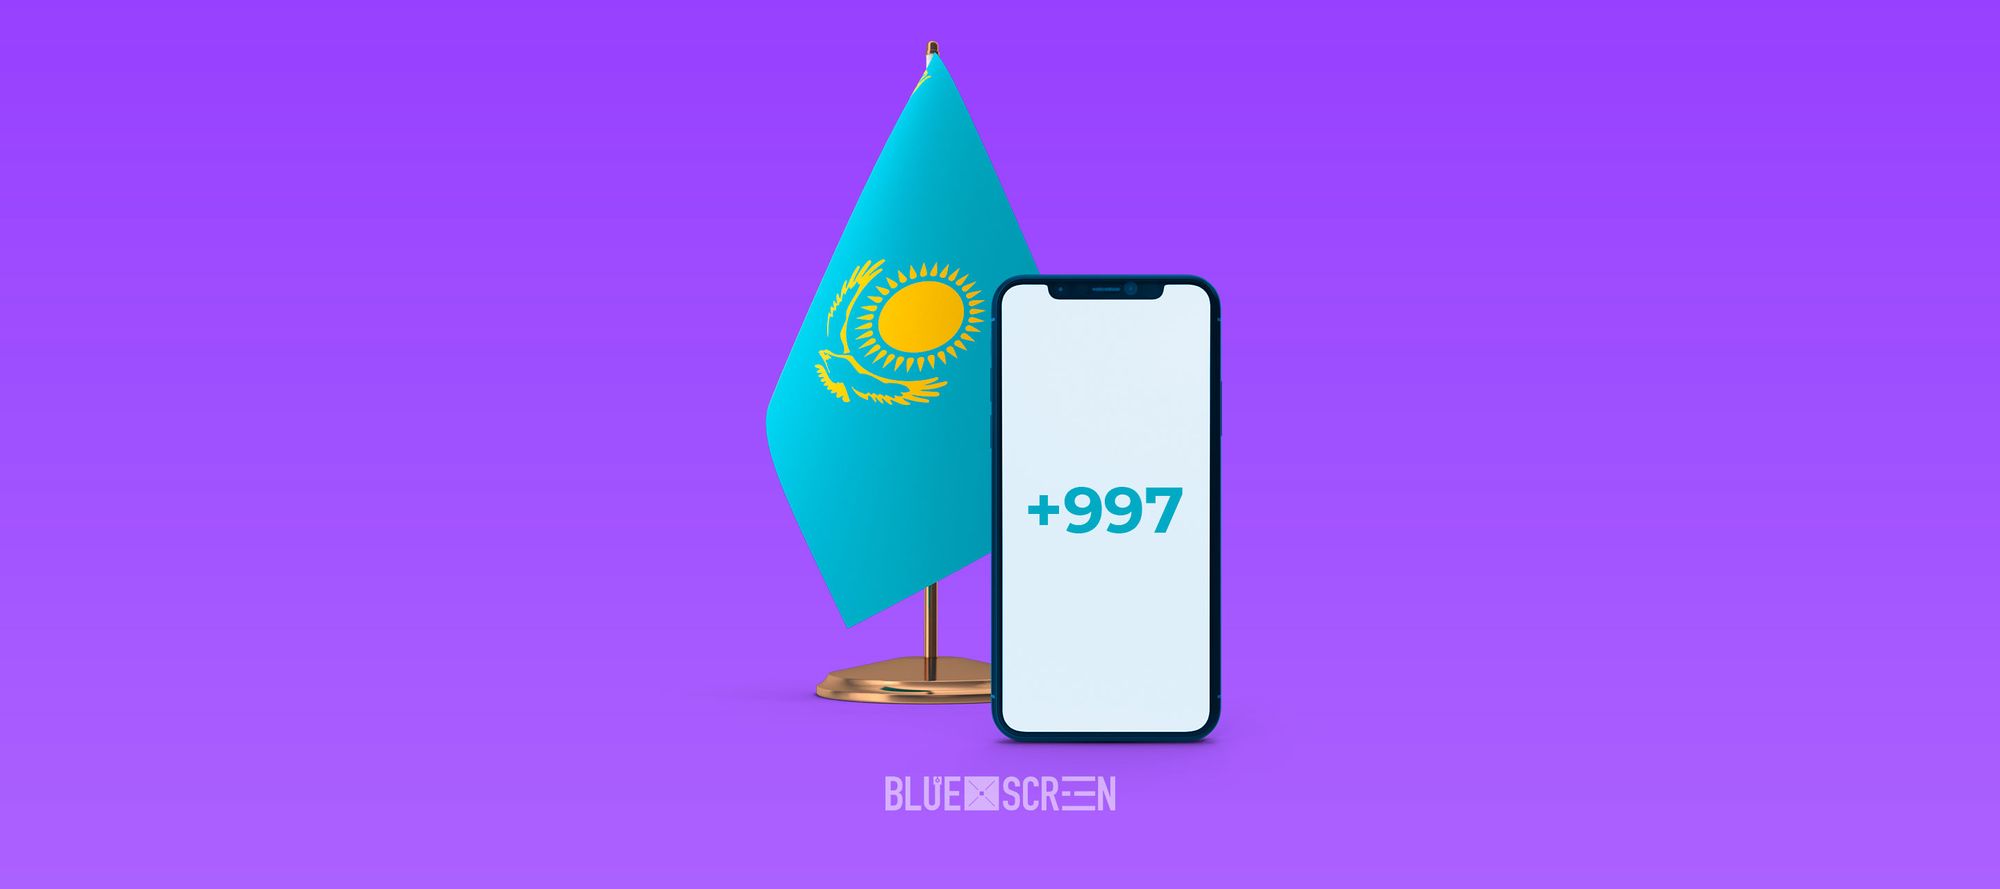 Казахстан перейдет на новый телефонный код +997 к 2025 году